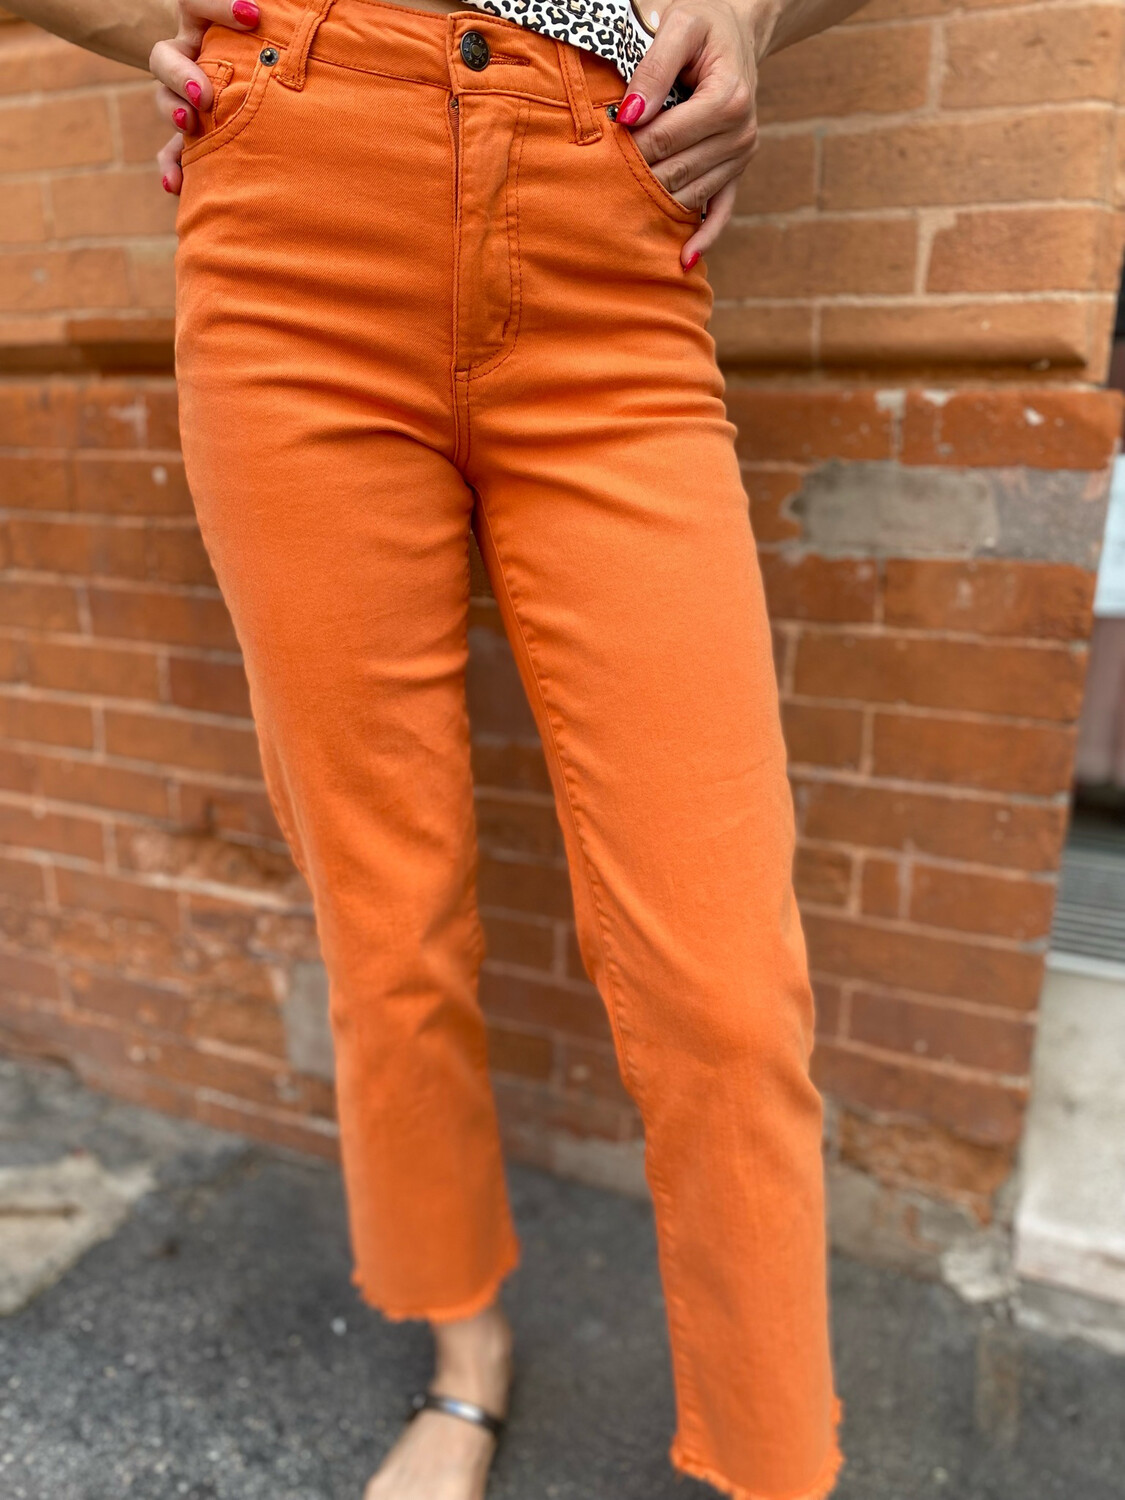 Surkana pantalone arancio